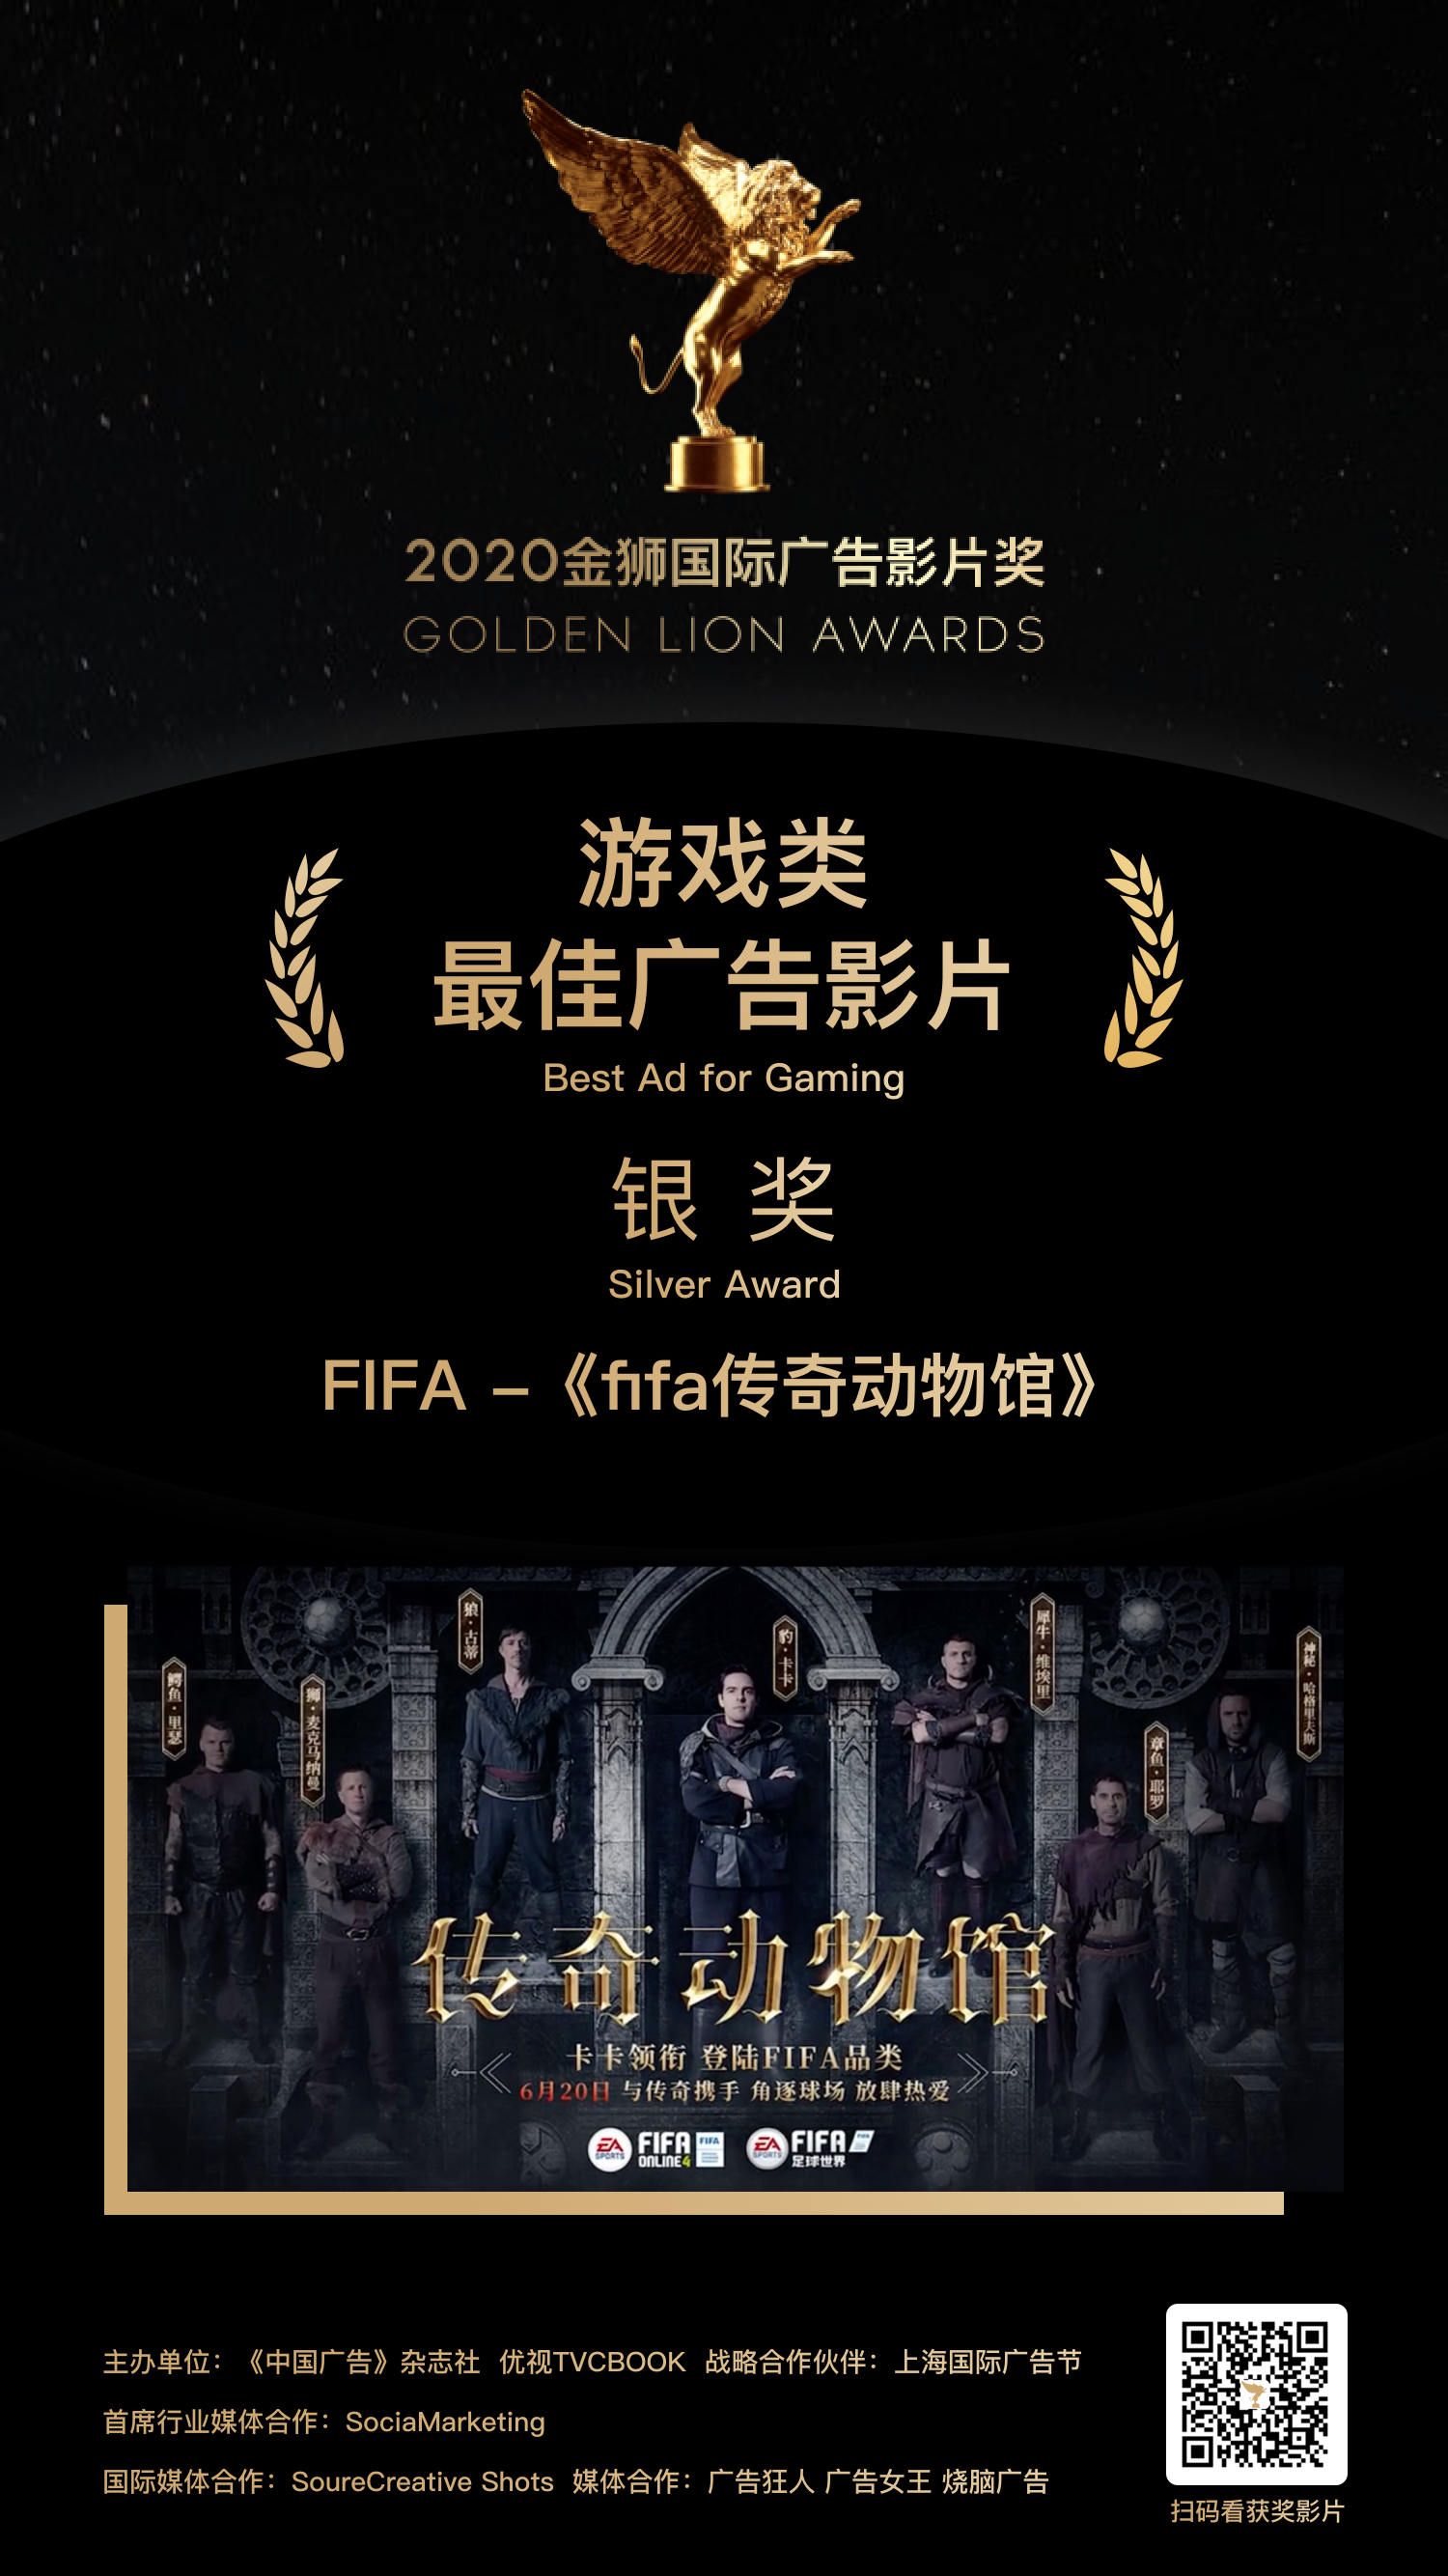 银奖-FIFA -《fifa传奇动物馆》.png